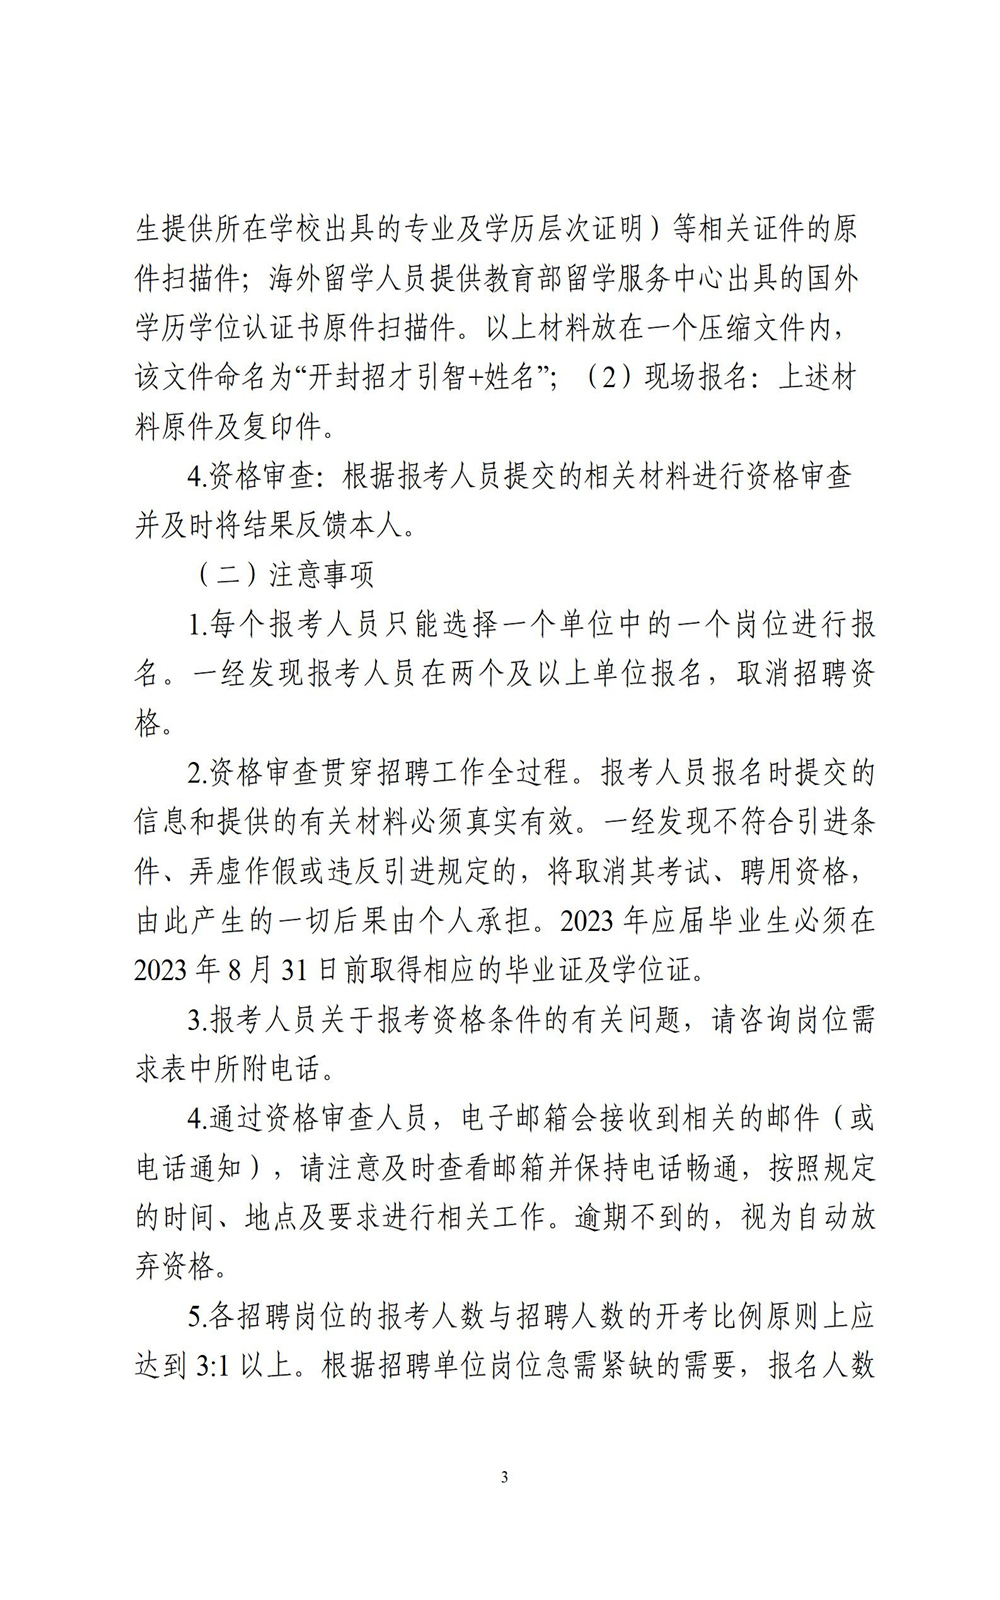 中国•河南招才引智创新发展大会2022年开封市事业单位公开引进工作人员公告_03.jpg